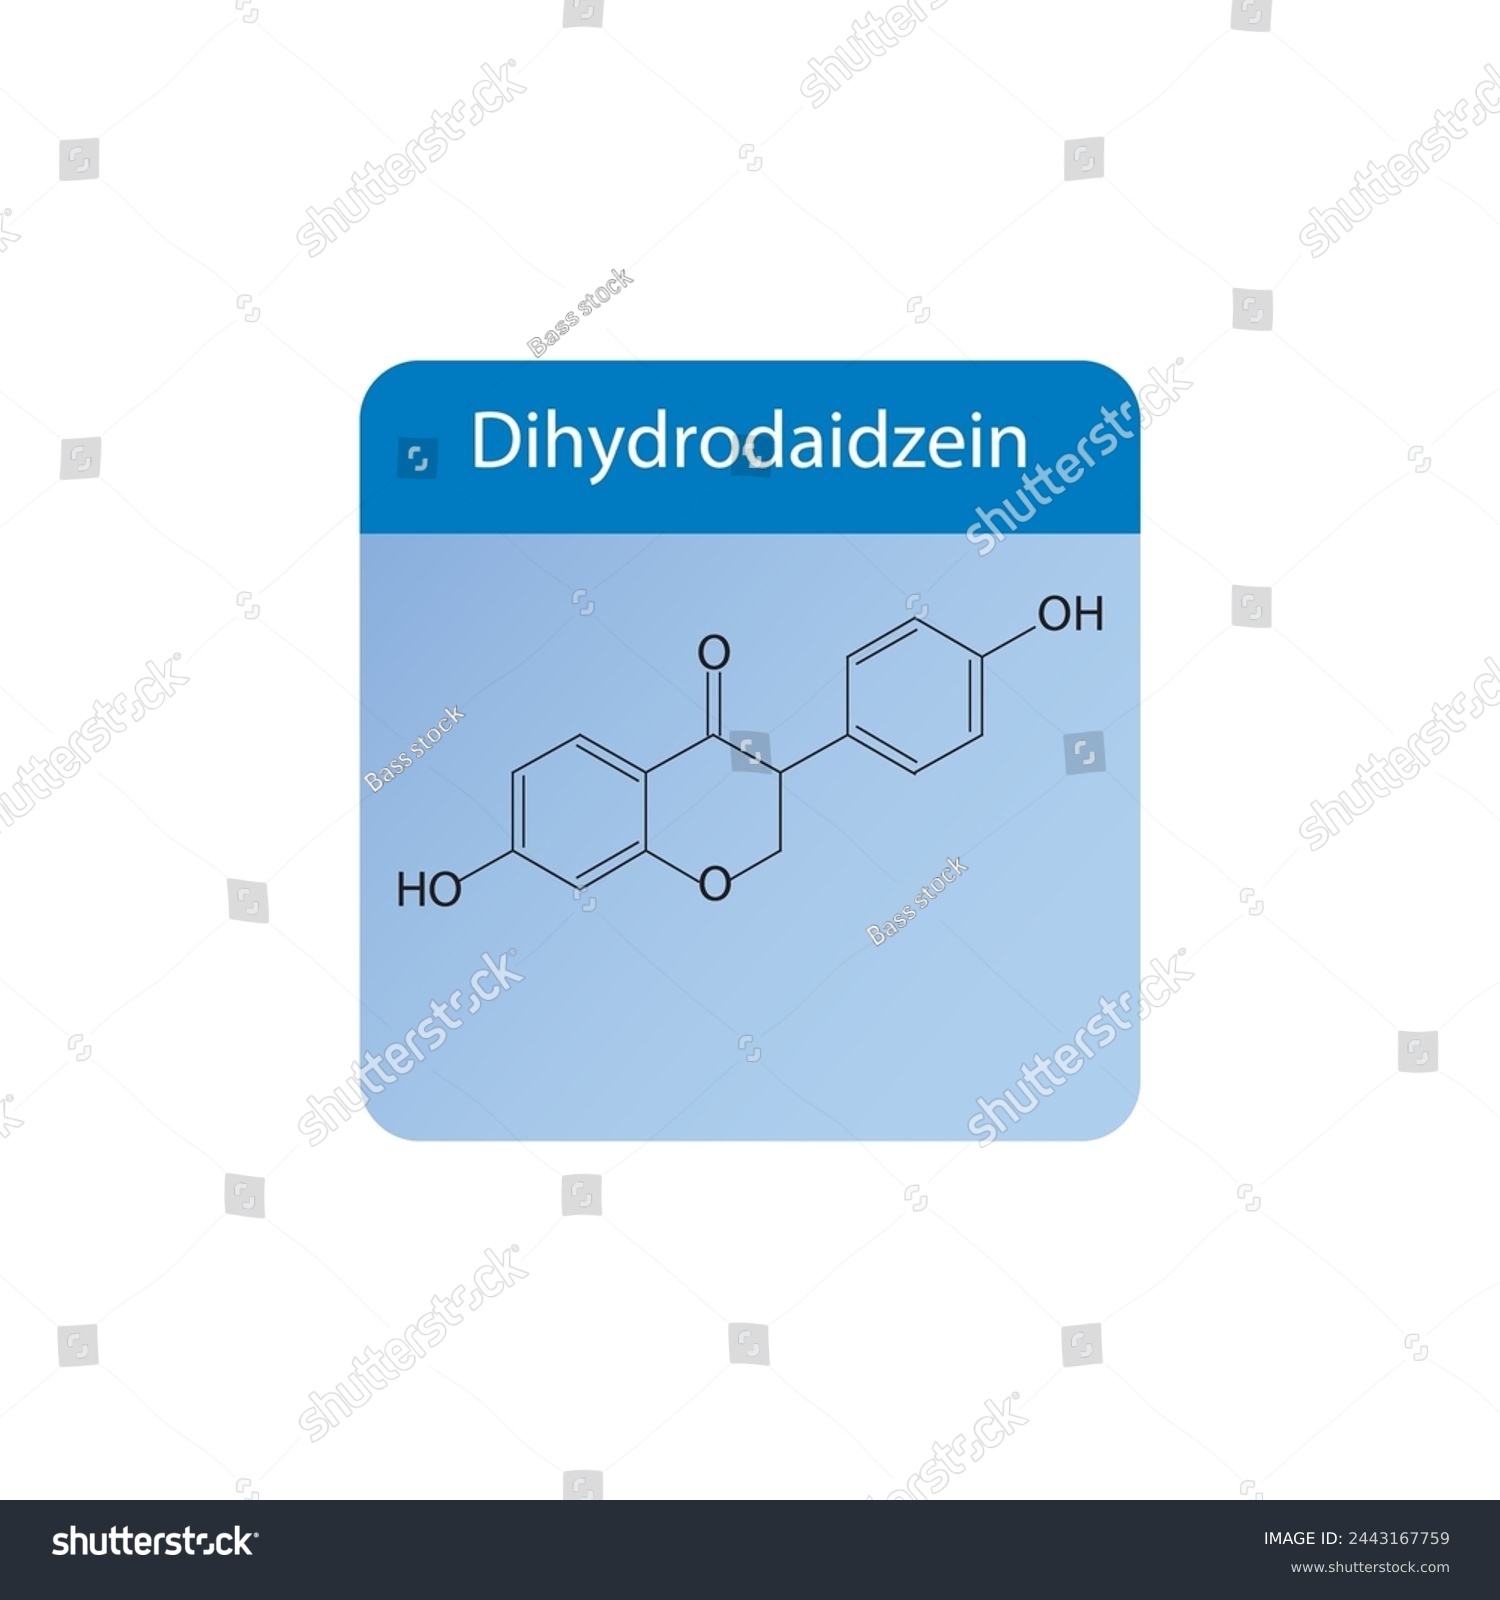 SVG of Dihydrodaidzein skeletal structure diagram.Isoflavanone compound molecule scientific illustration on blue background. svg